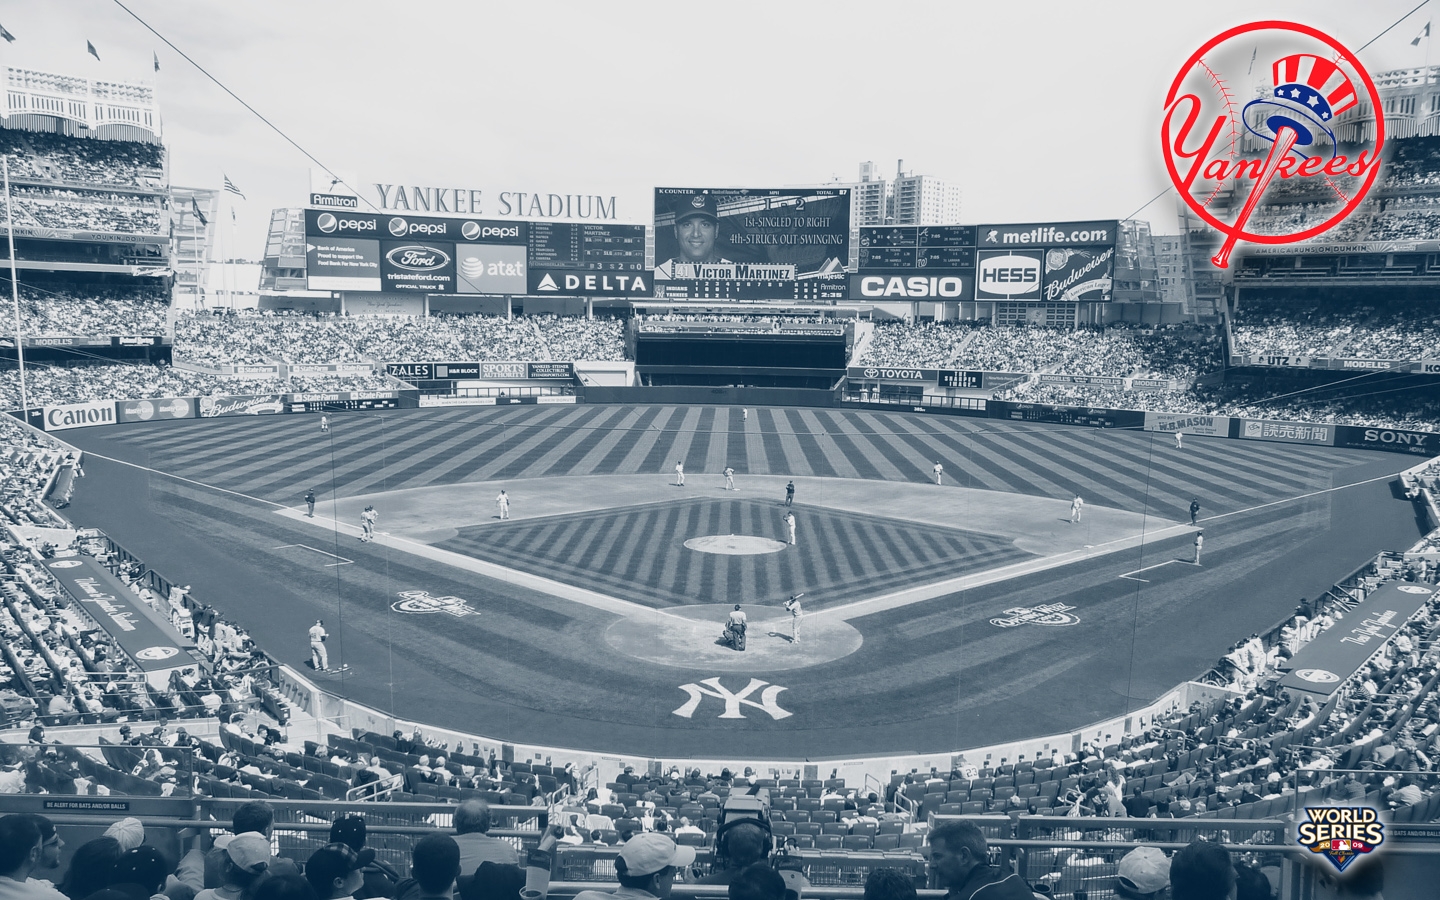 Hình nền Yankee Stadium miễn phí là một sự lựa chọn tuyệt vời cho bạn nếu bạn muốn có một bức ảnh đẹp và sự tiện lợi khi tải về miễn phí. Với các hình ảnh hình thành khung cảnh trên sân bóng, bạn sẽ có nhiều lựa chọn để trang trí điện thoại hoặc máy tính của mình. Hãy tải về ngay để trải nghiệm.